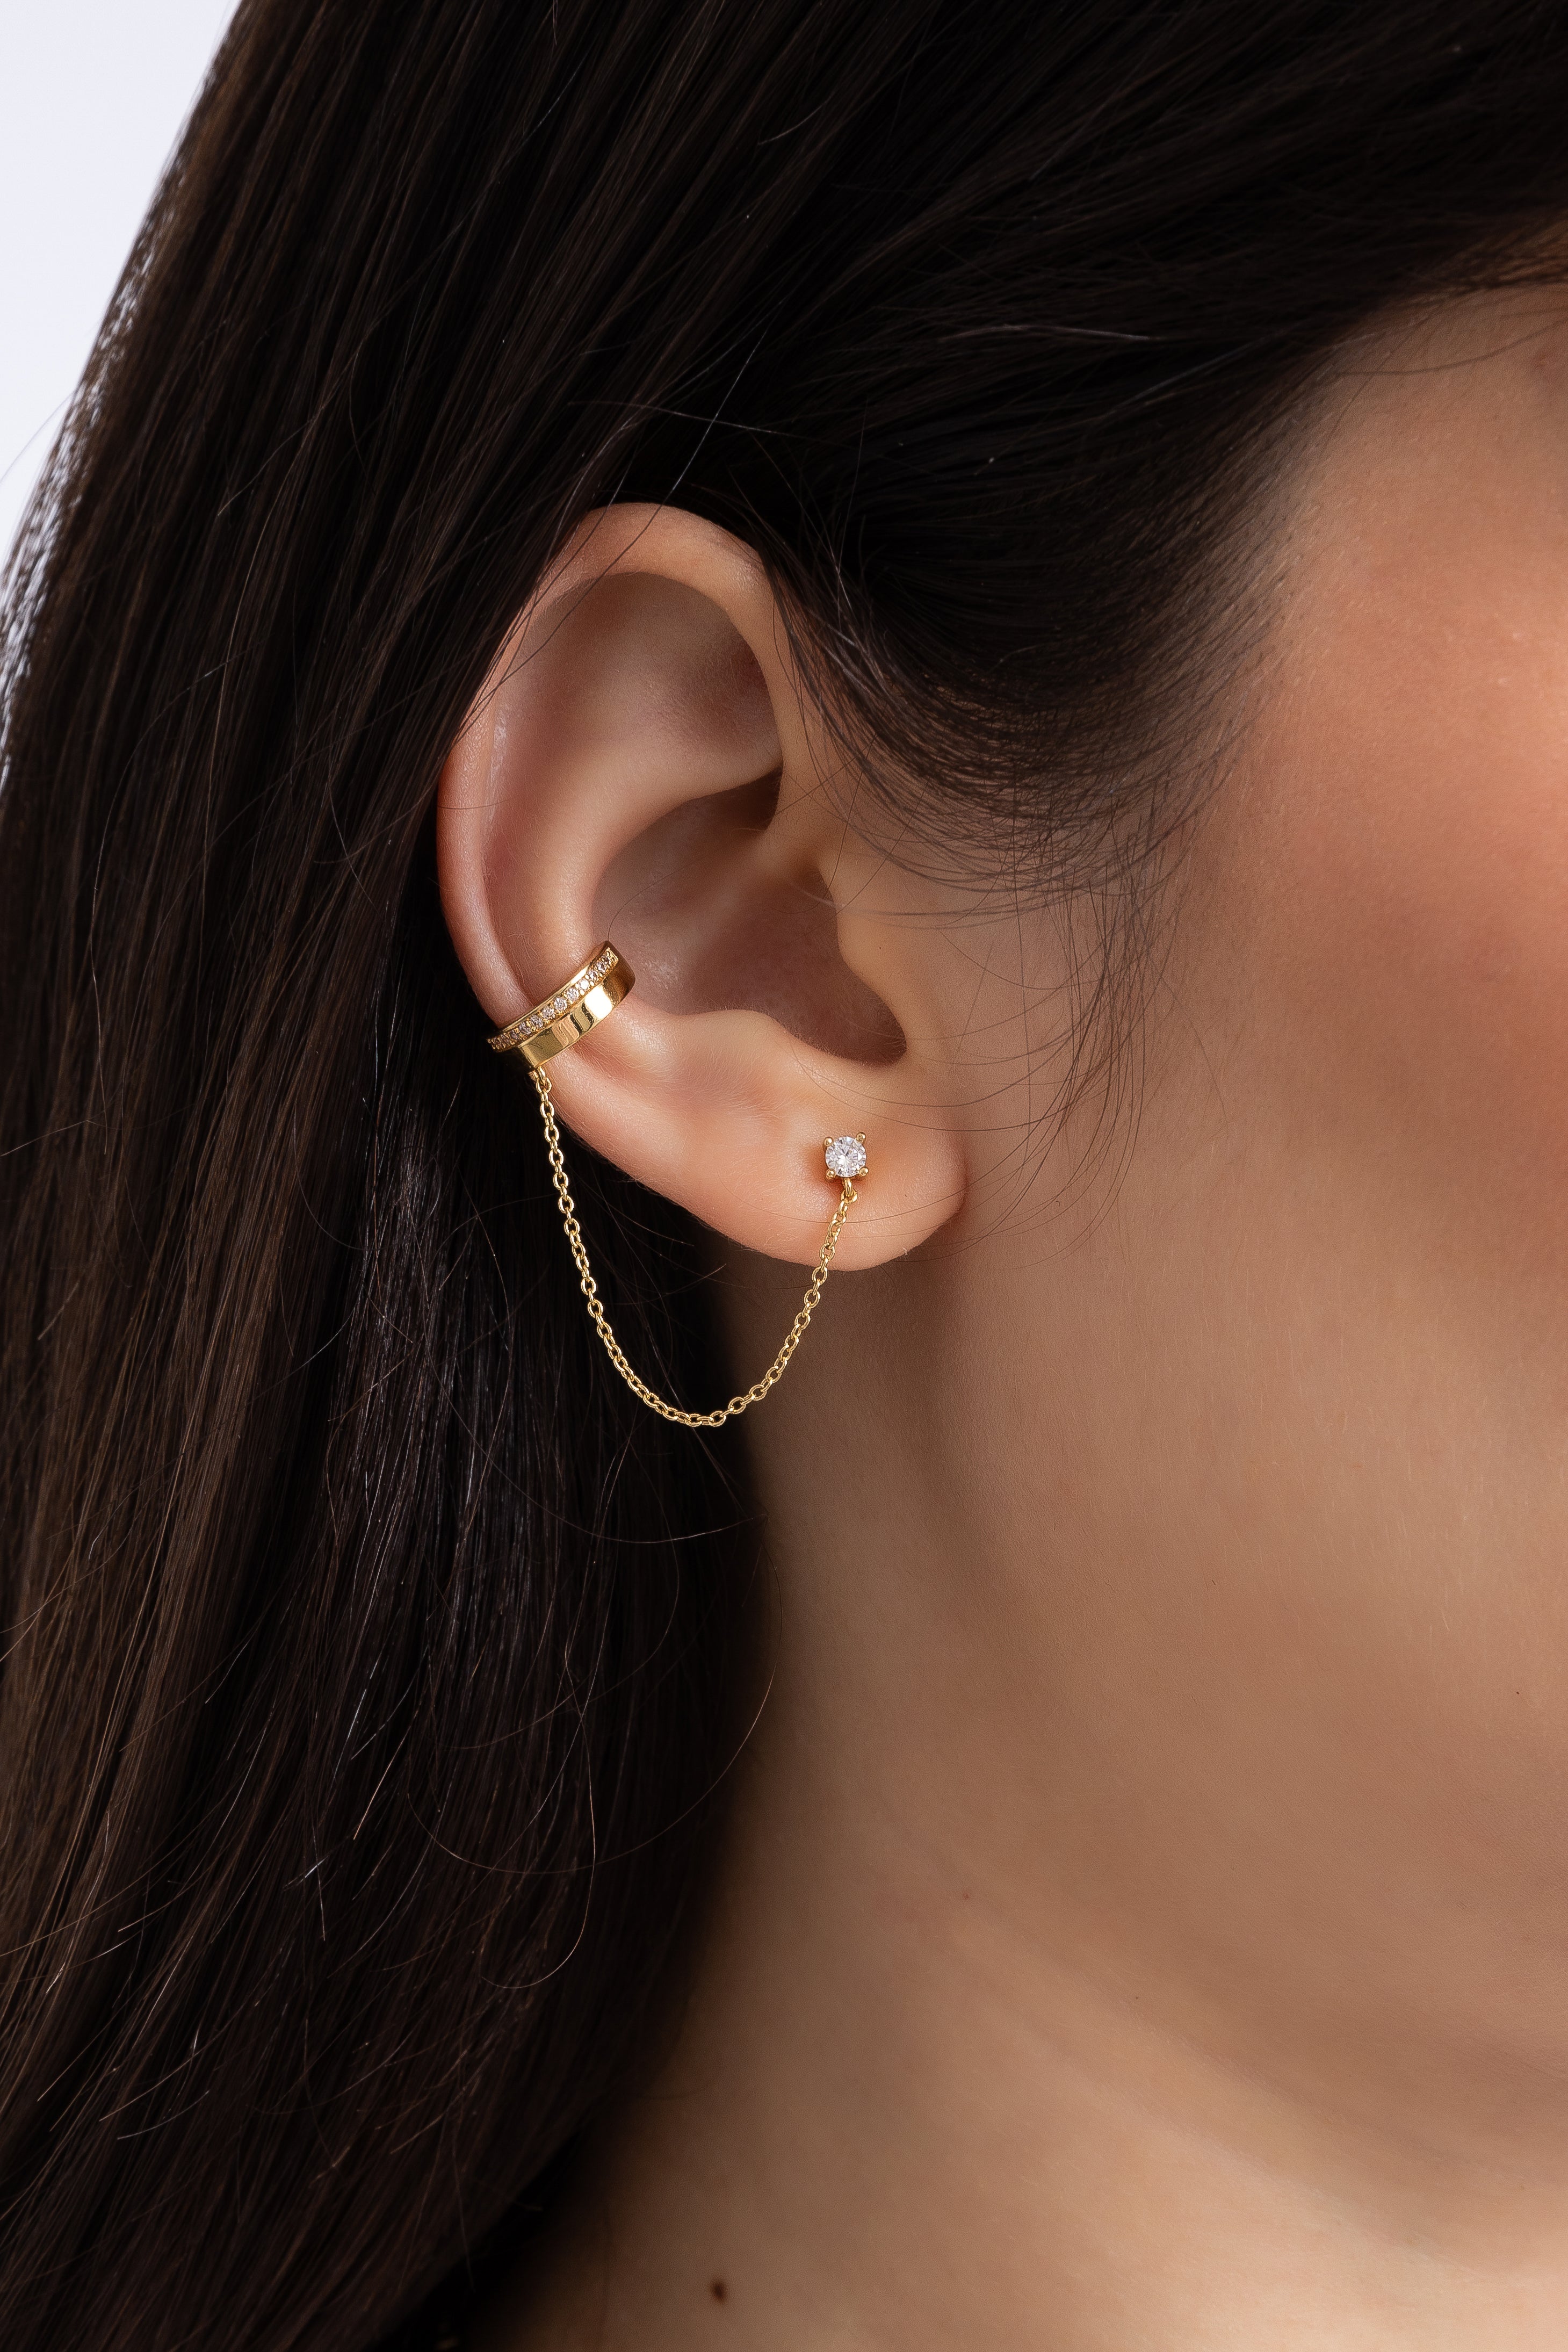 Buy 14K Gold Ear Cuff Earrings for Women - Ear Cuffs No Piercing Non  Pierced Ears Cartilage Earrings Minimalist Geometric Daily Wearing at  Amazon.in